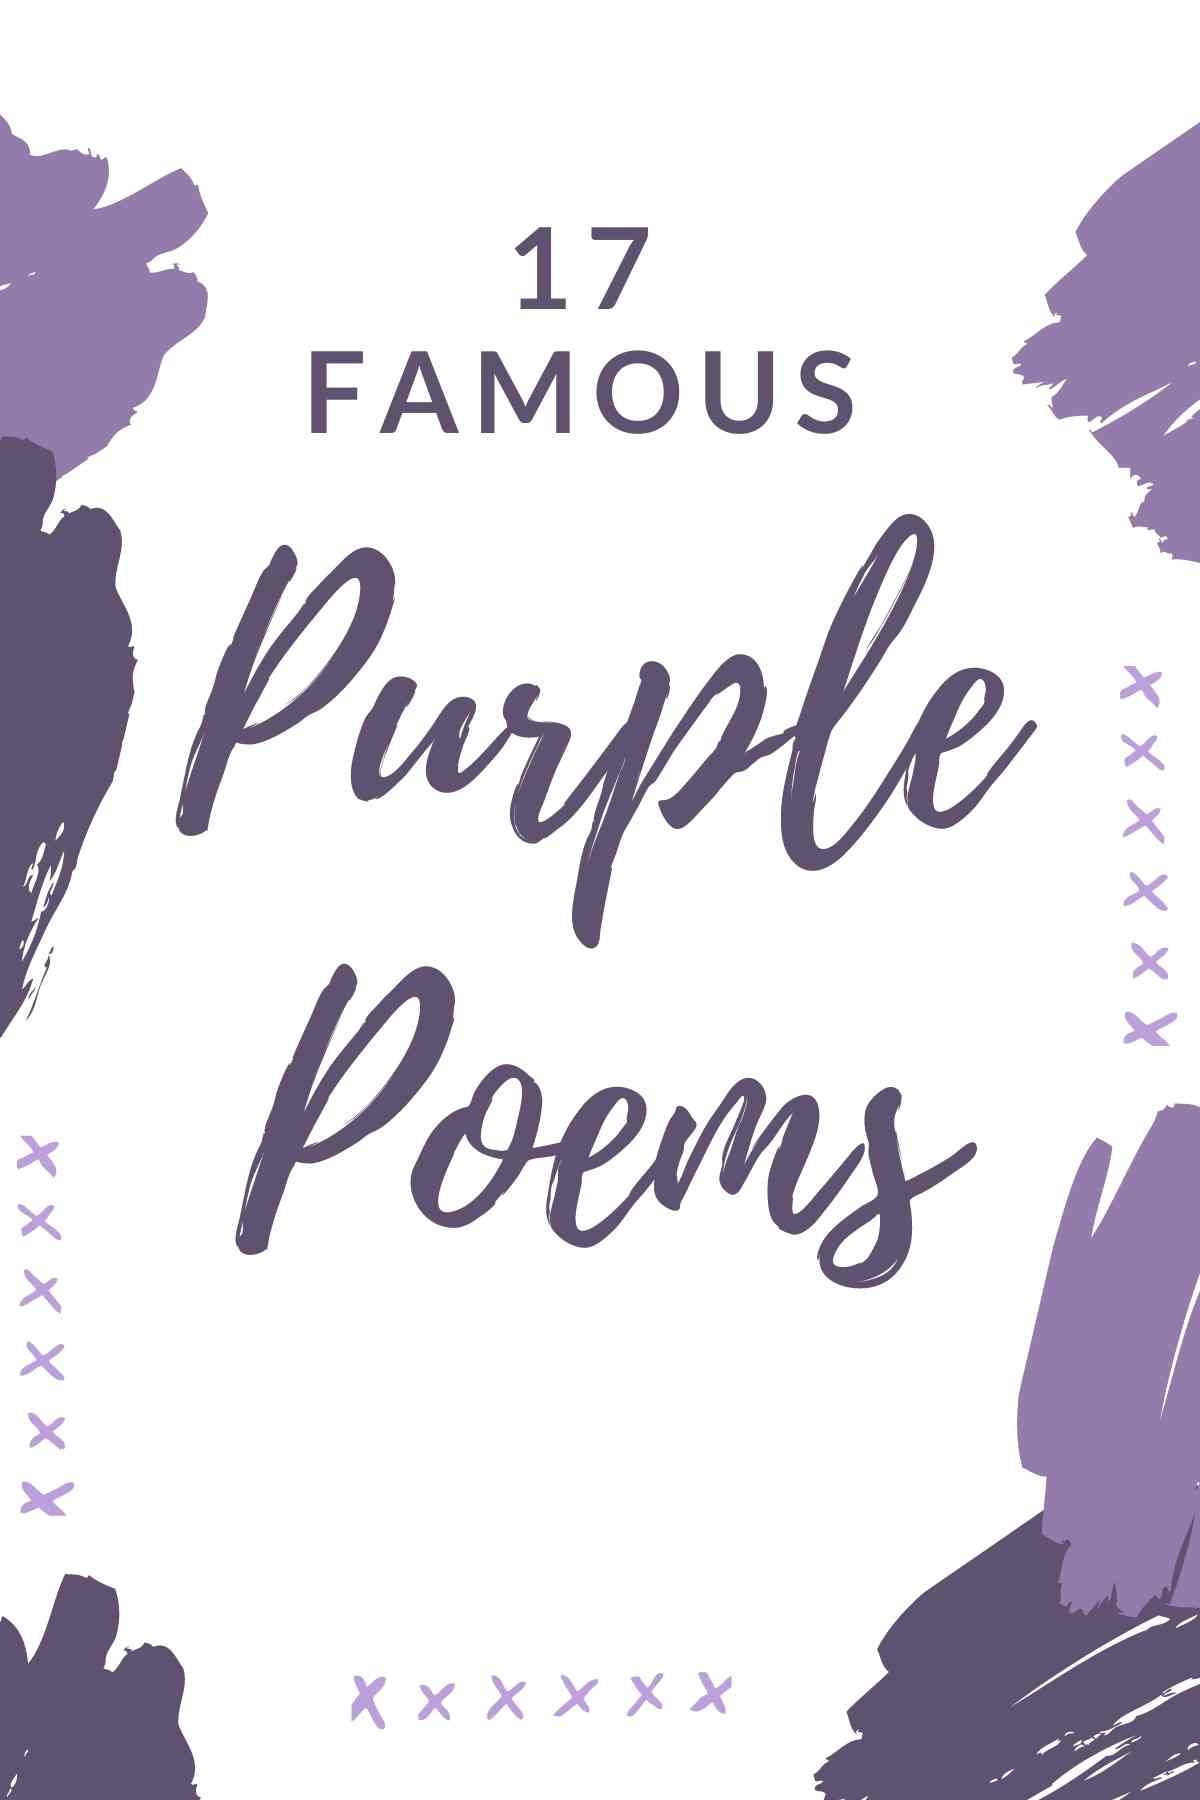 Famous purple poems